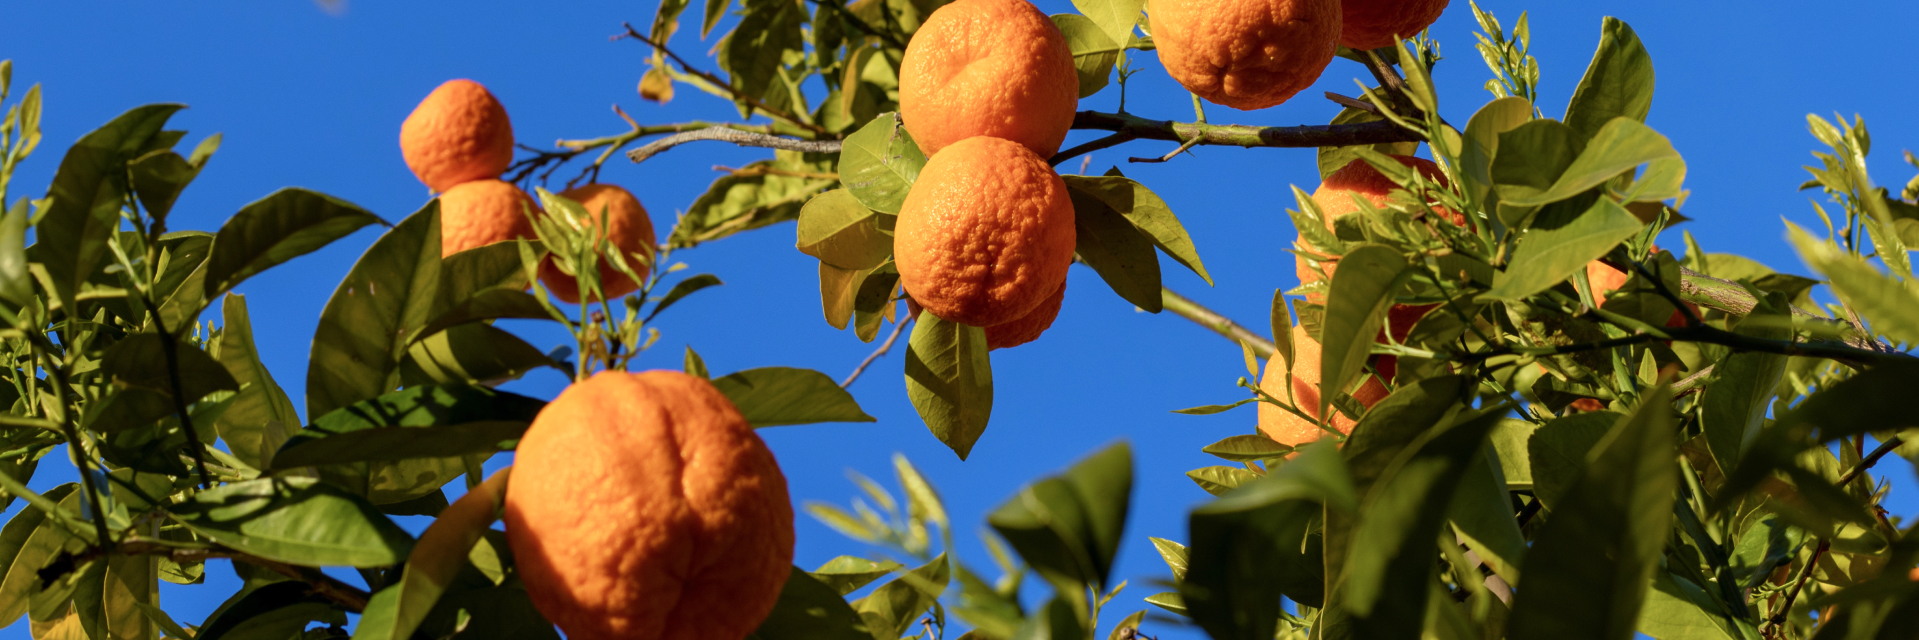 Oranges on the orange tree branches